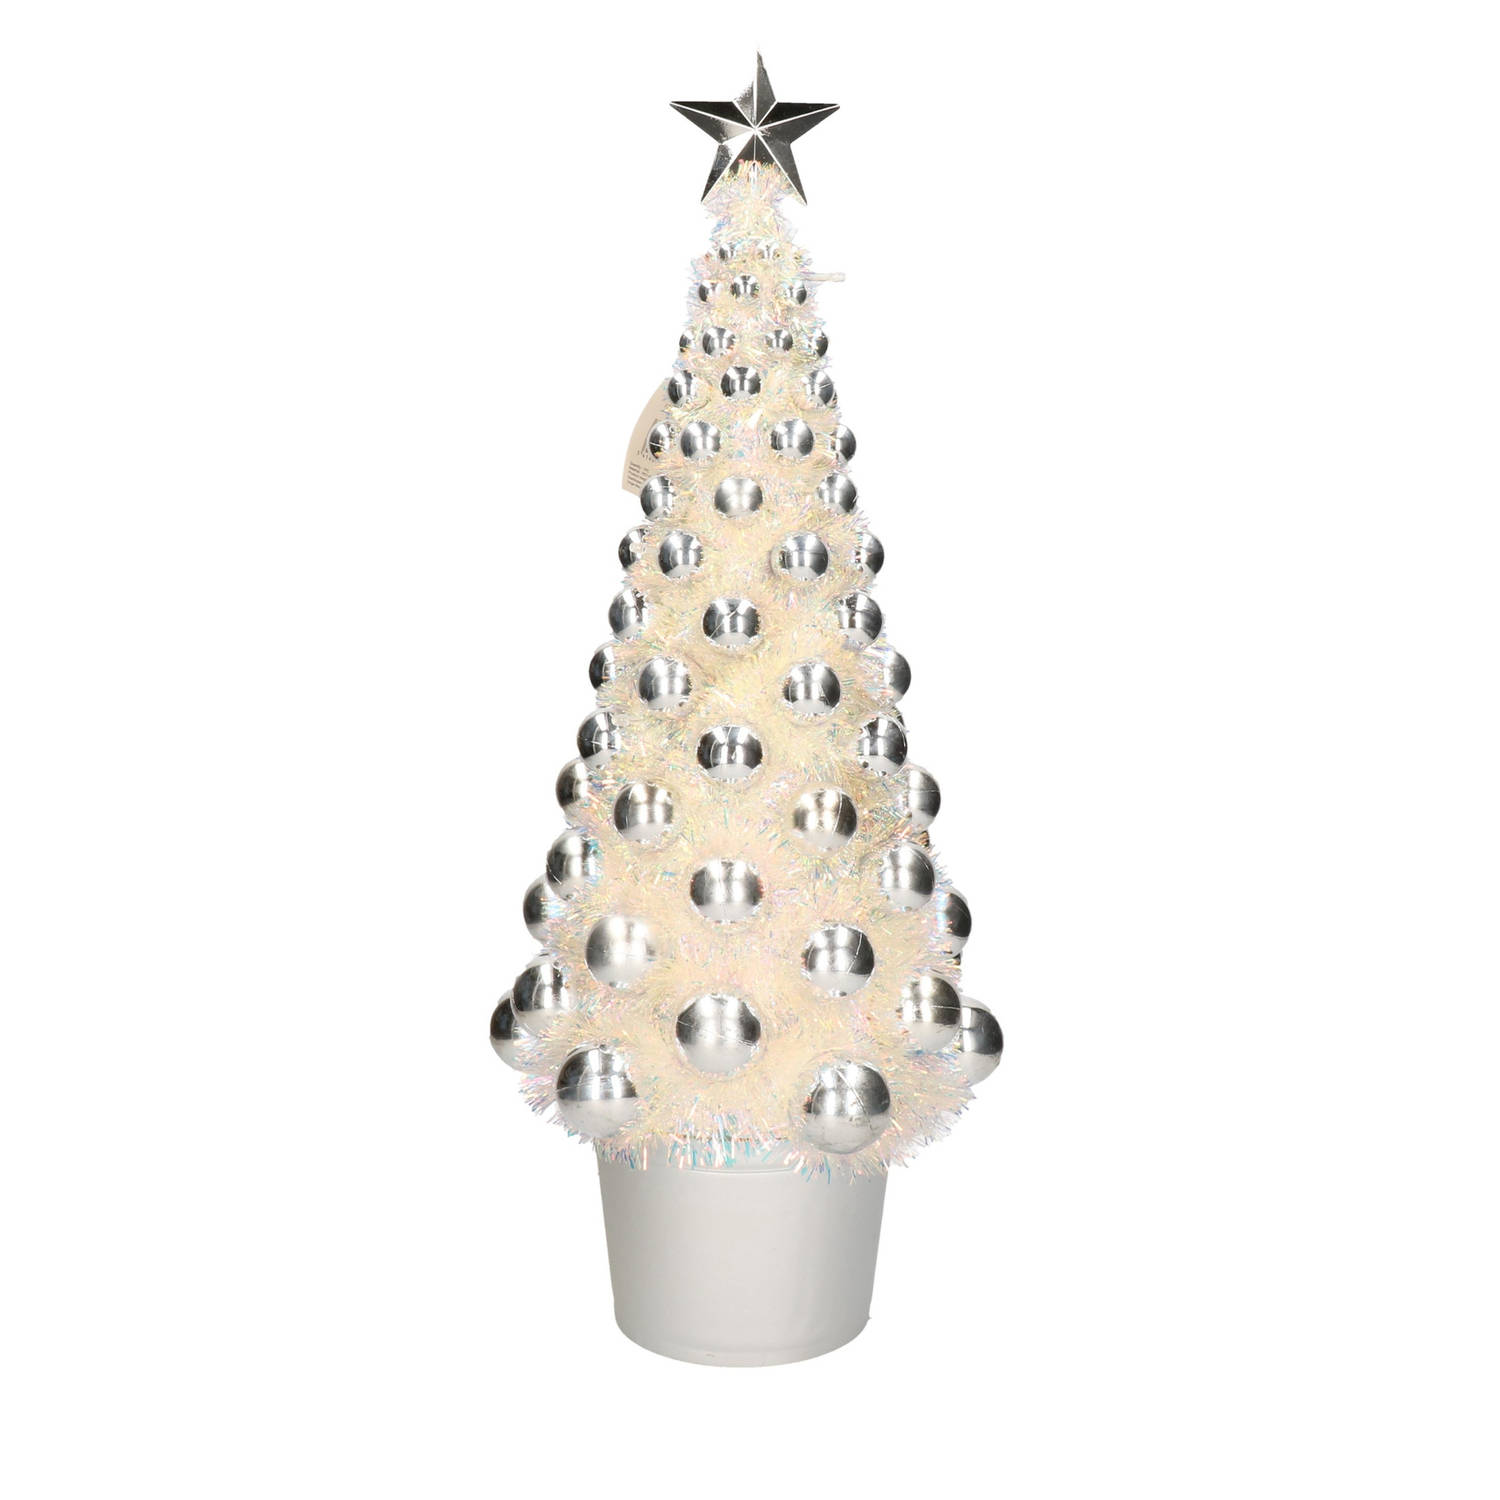 vloeistof een experiment doen Ontembare Complete kerstboom met ballen en lichtjes zilver 60 cm - Kunstkerstboom |  Blokker